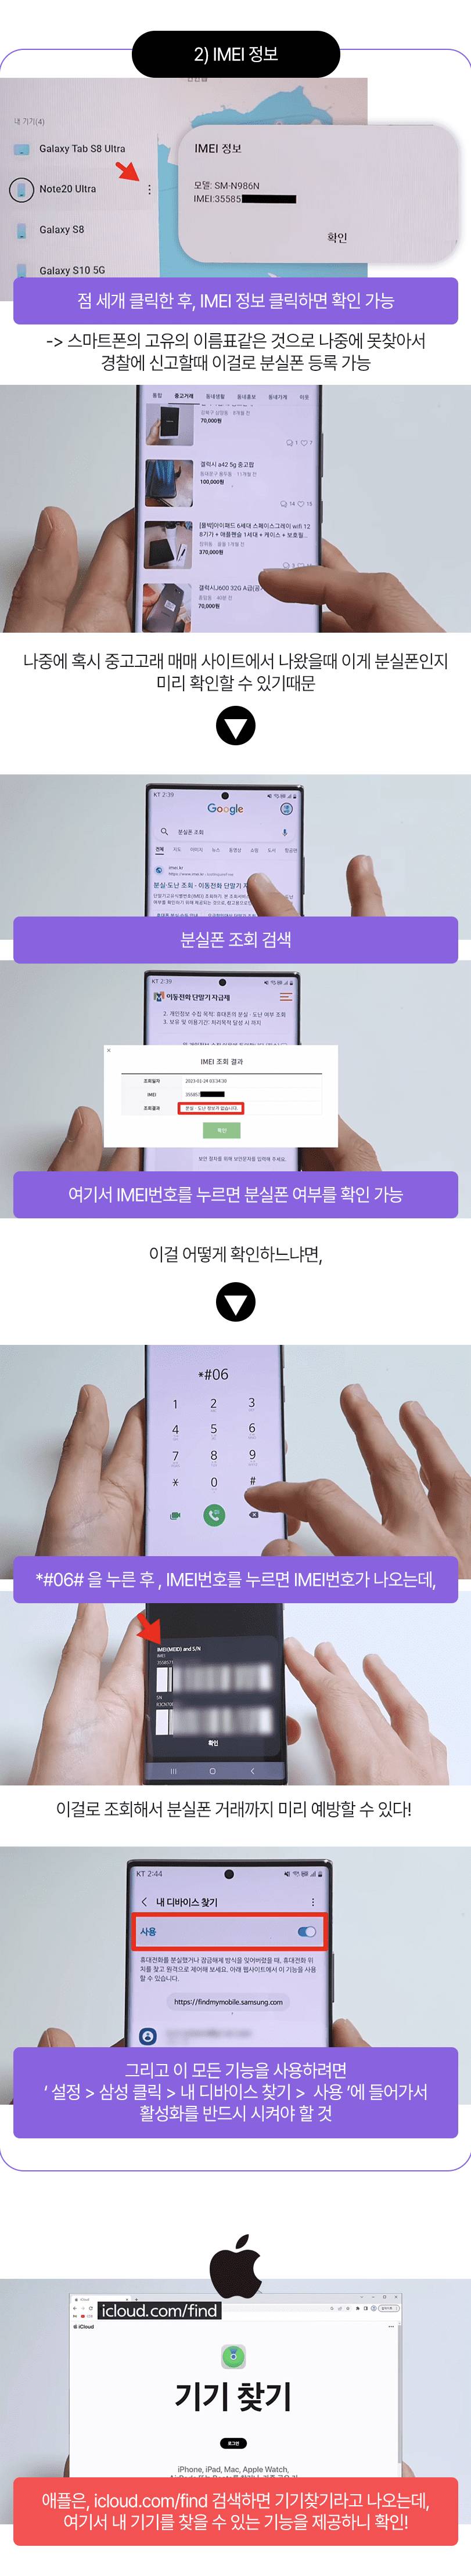 한국에서 10초만에 잃어버린 스마트폰 찾는 방법 (제발 이거부터 하세요) | 인스티즈